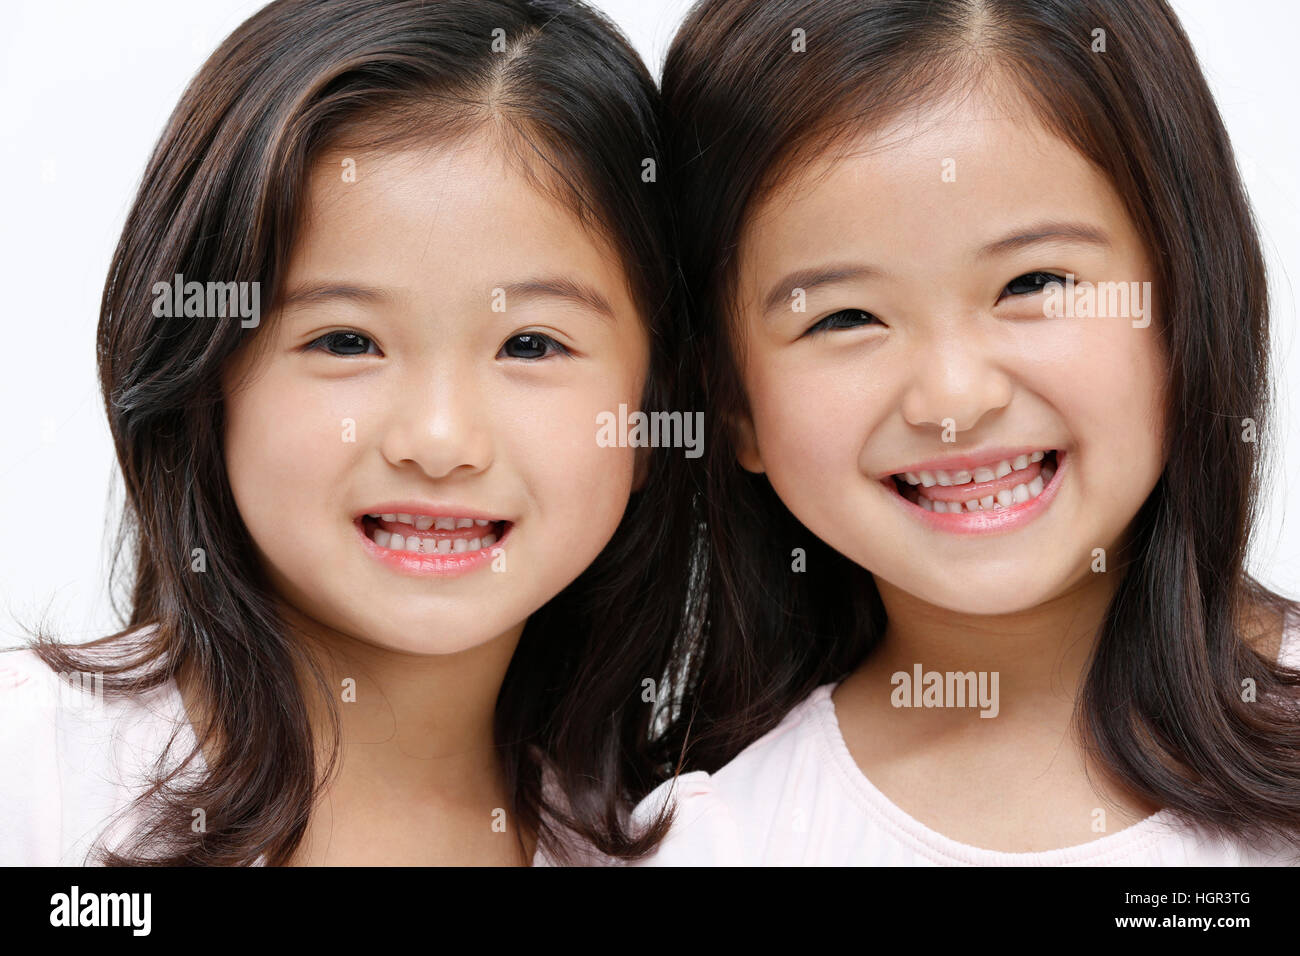 Retrato de dos niñas sonrientes Foto de stock